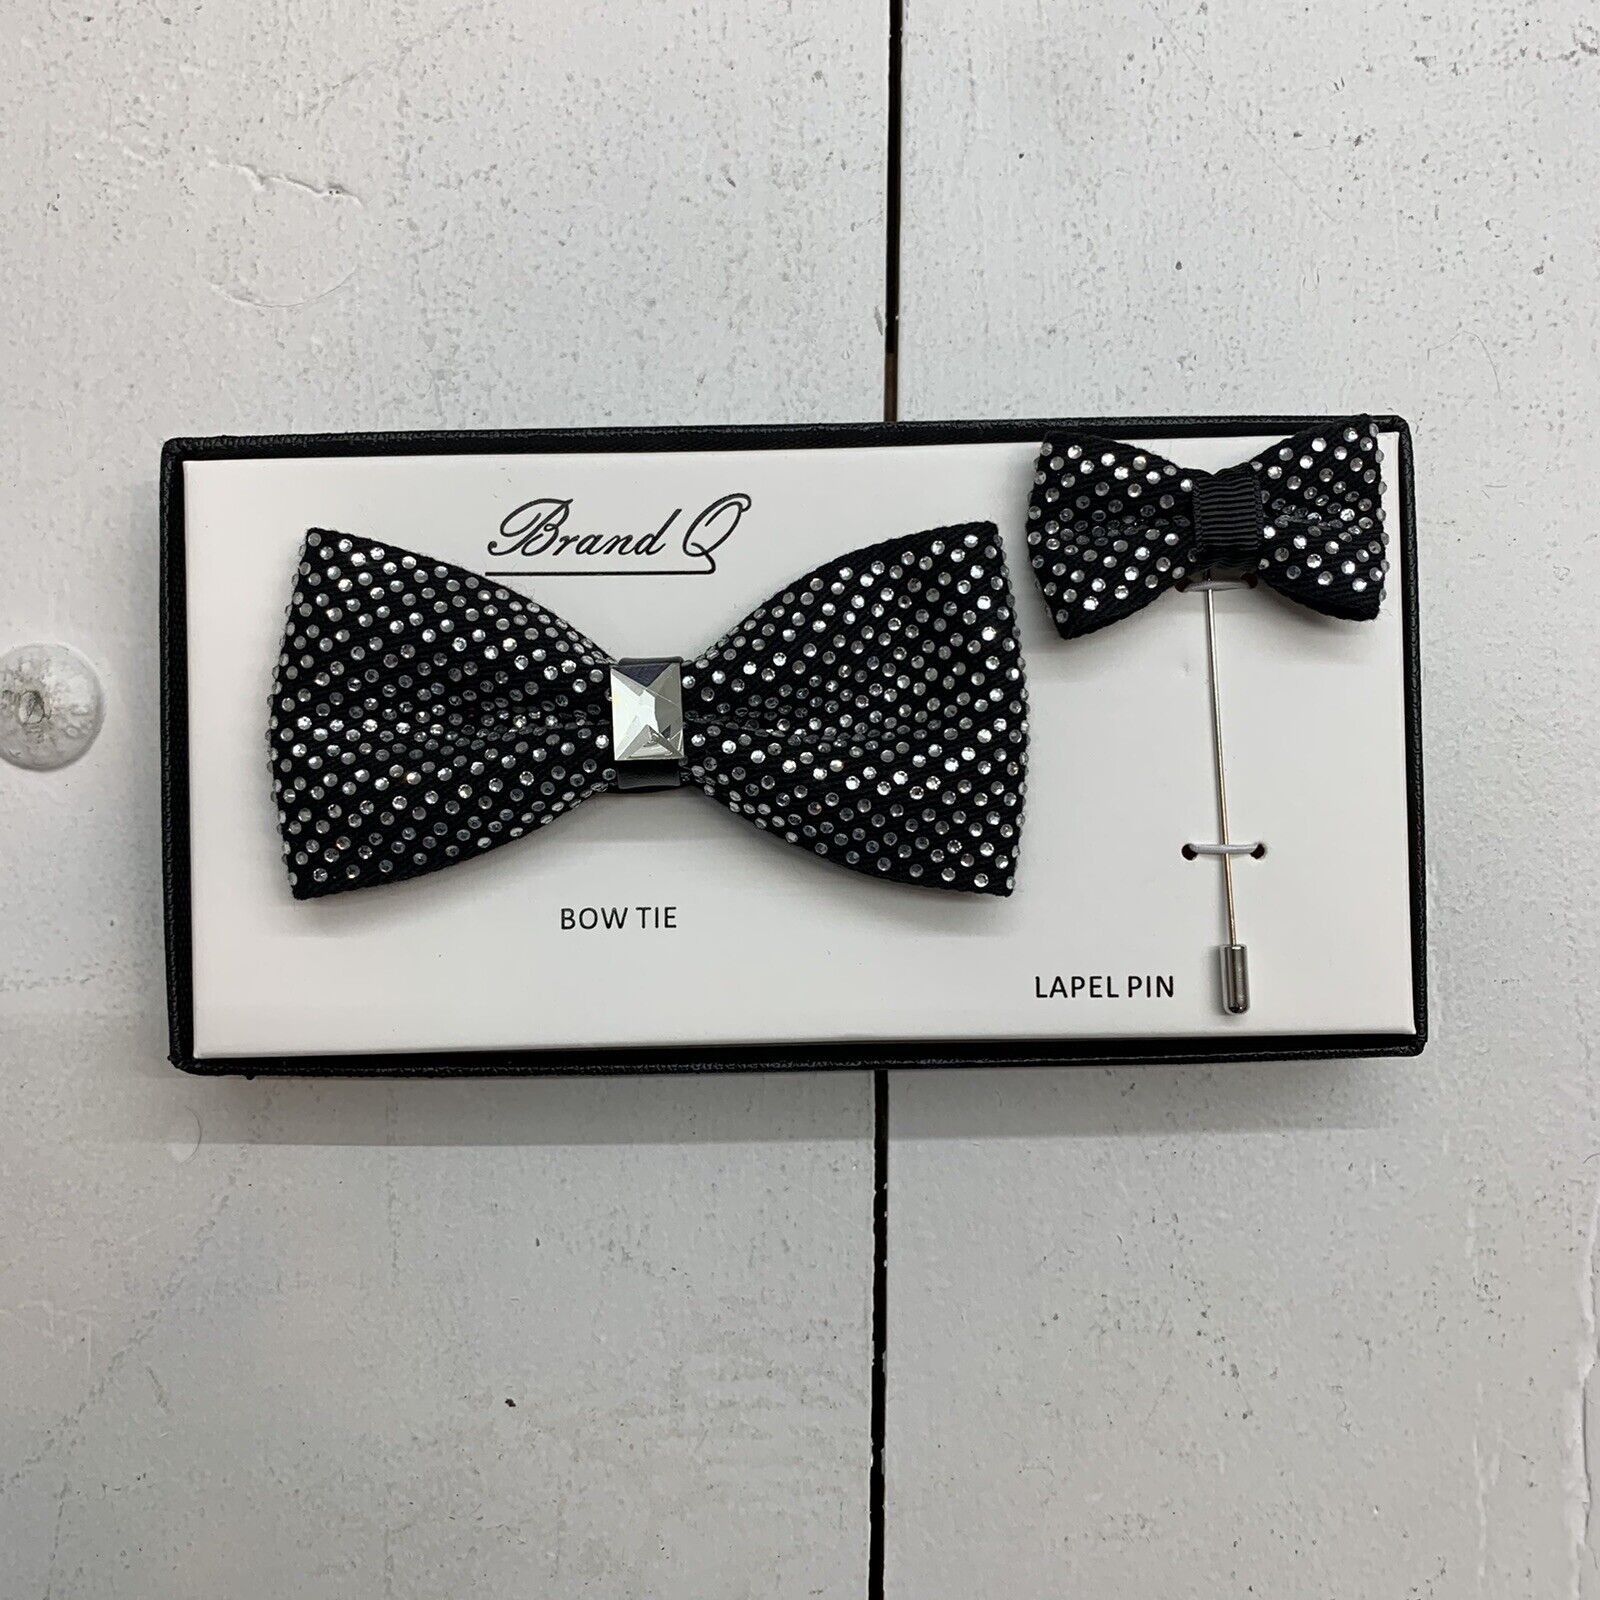 Brand Q Black Silver bow tie & Label Pin